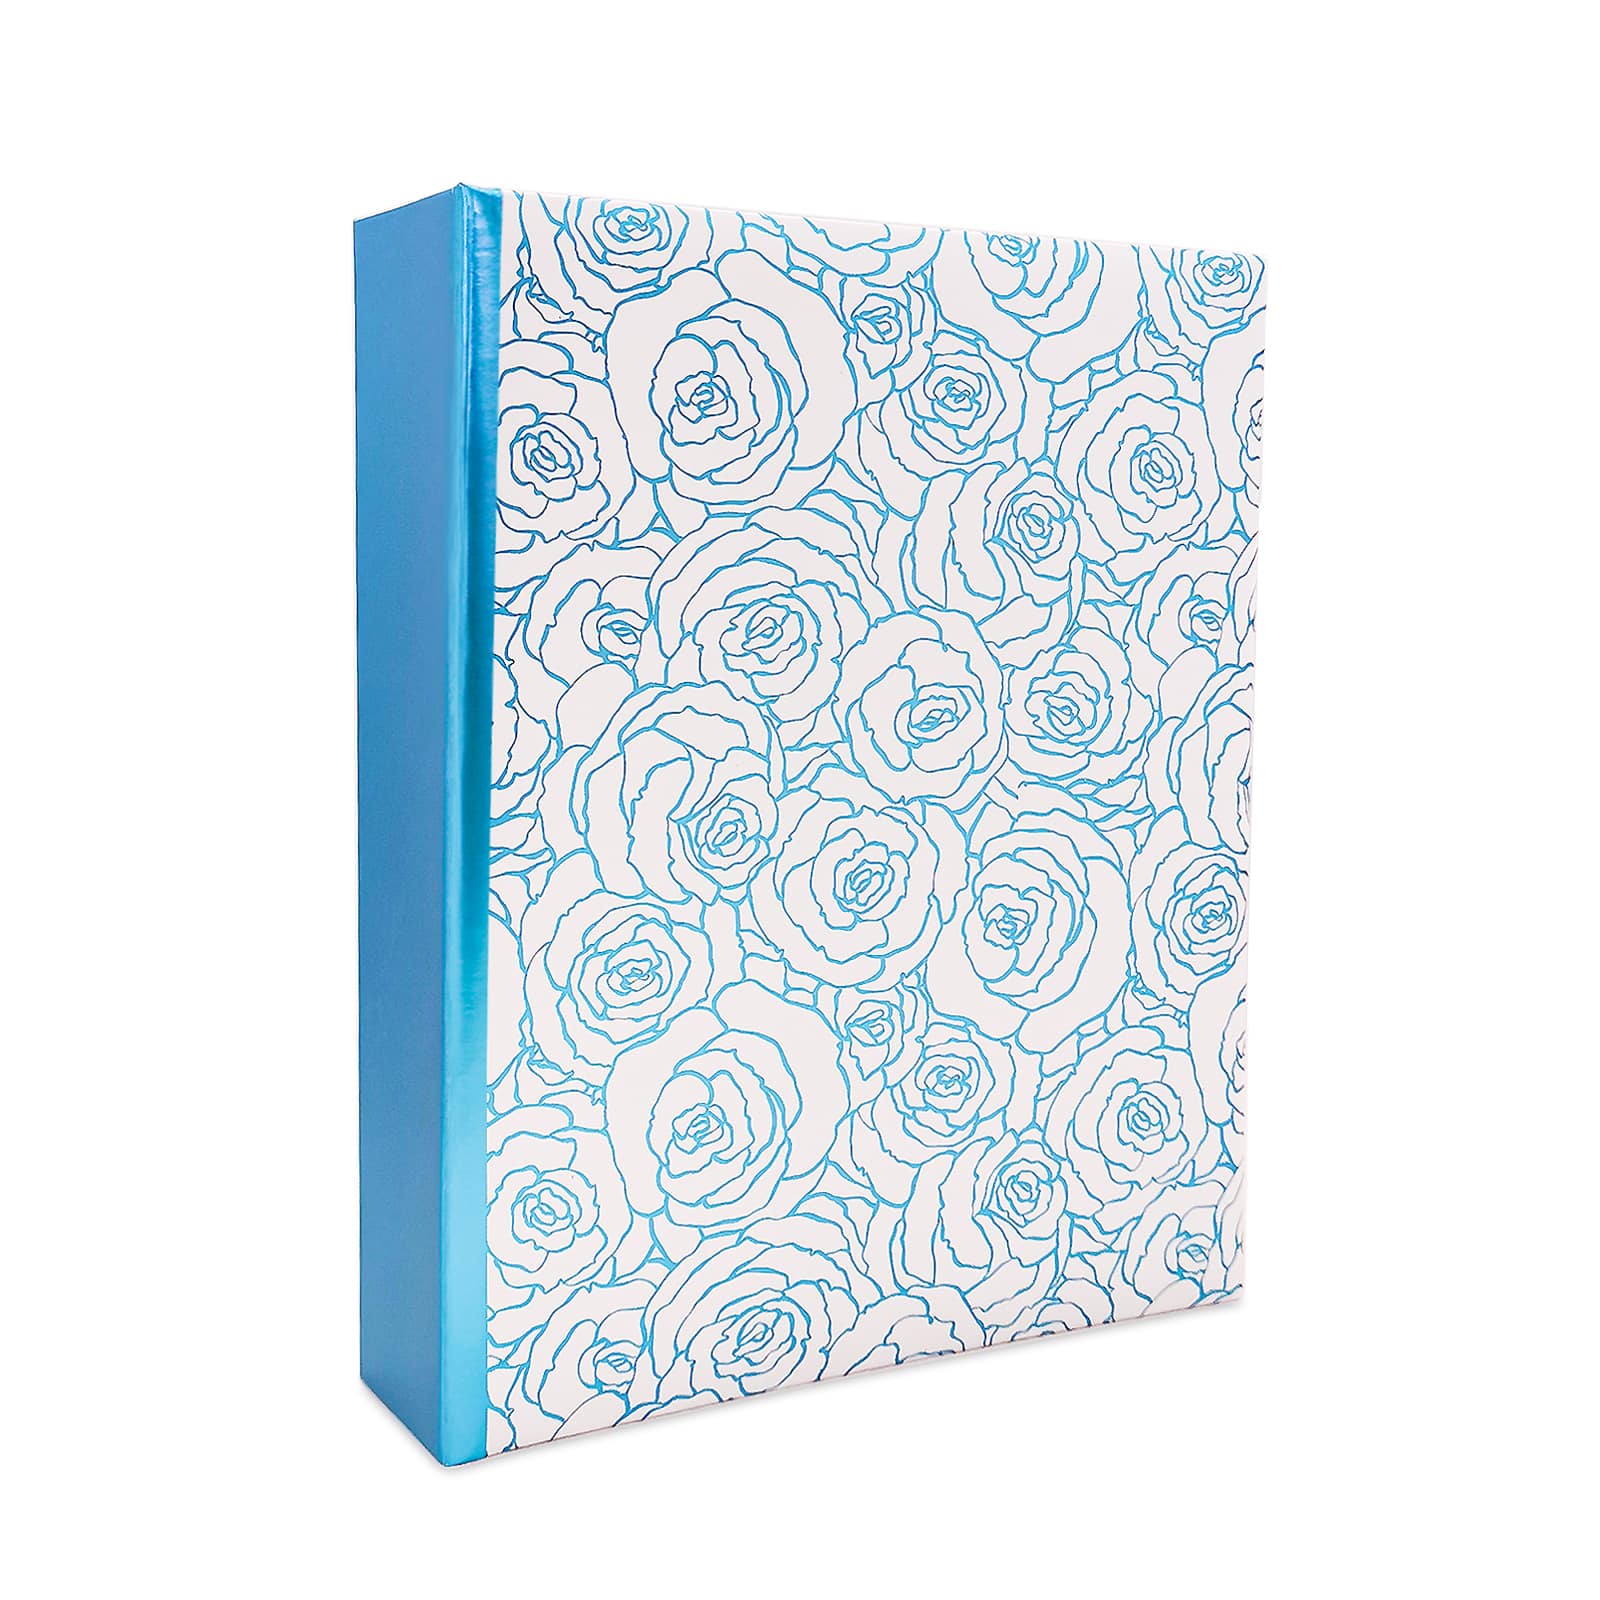 Hardbound Sketchbook by Artist's Loft™, 8.5 x 11 